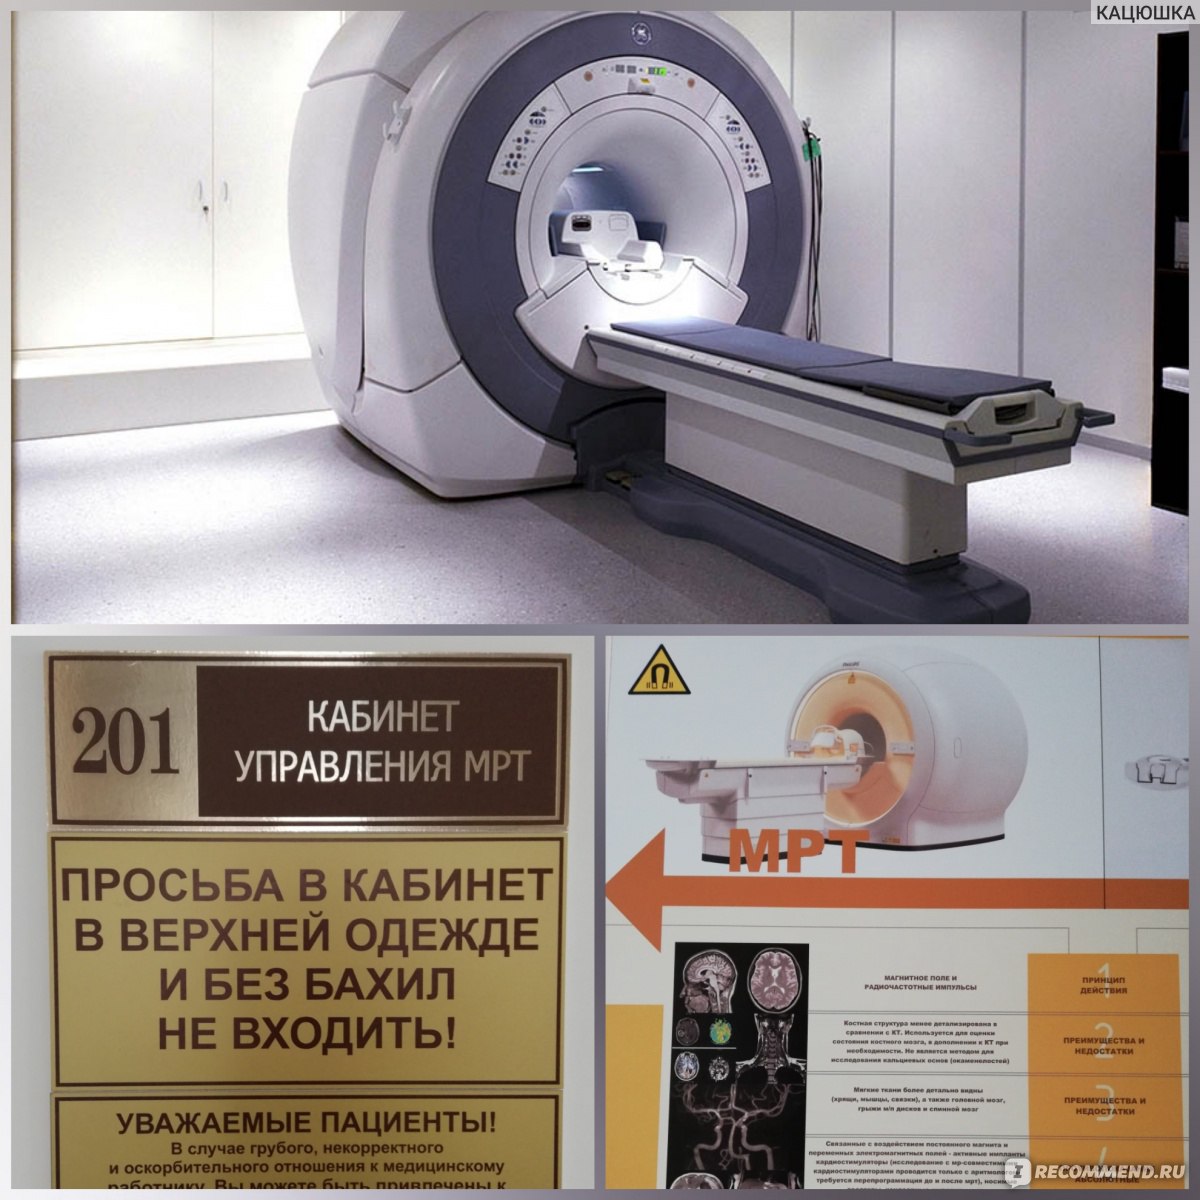 Магнитно-резонансный томограф мрт-амико450